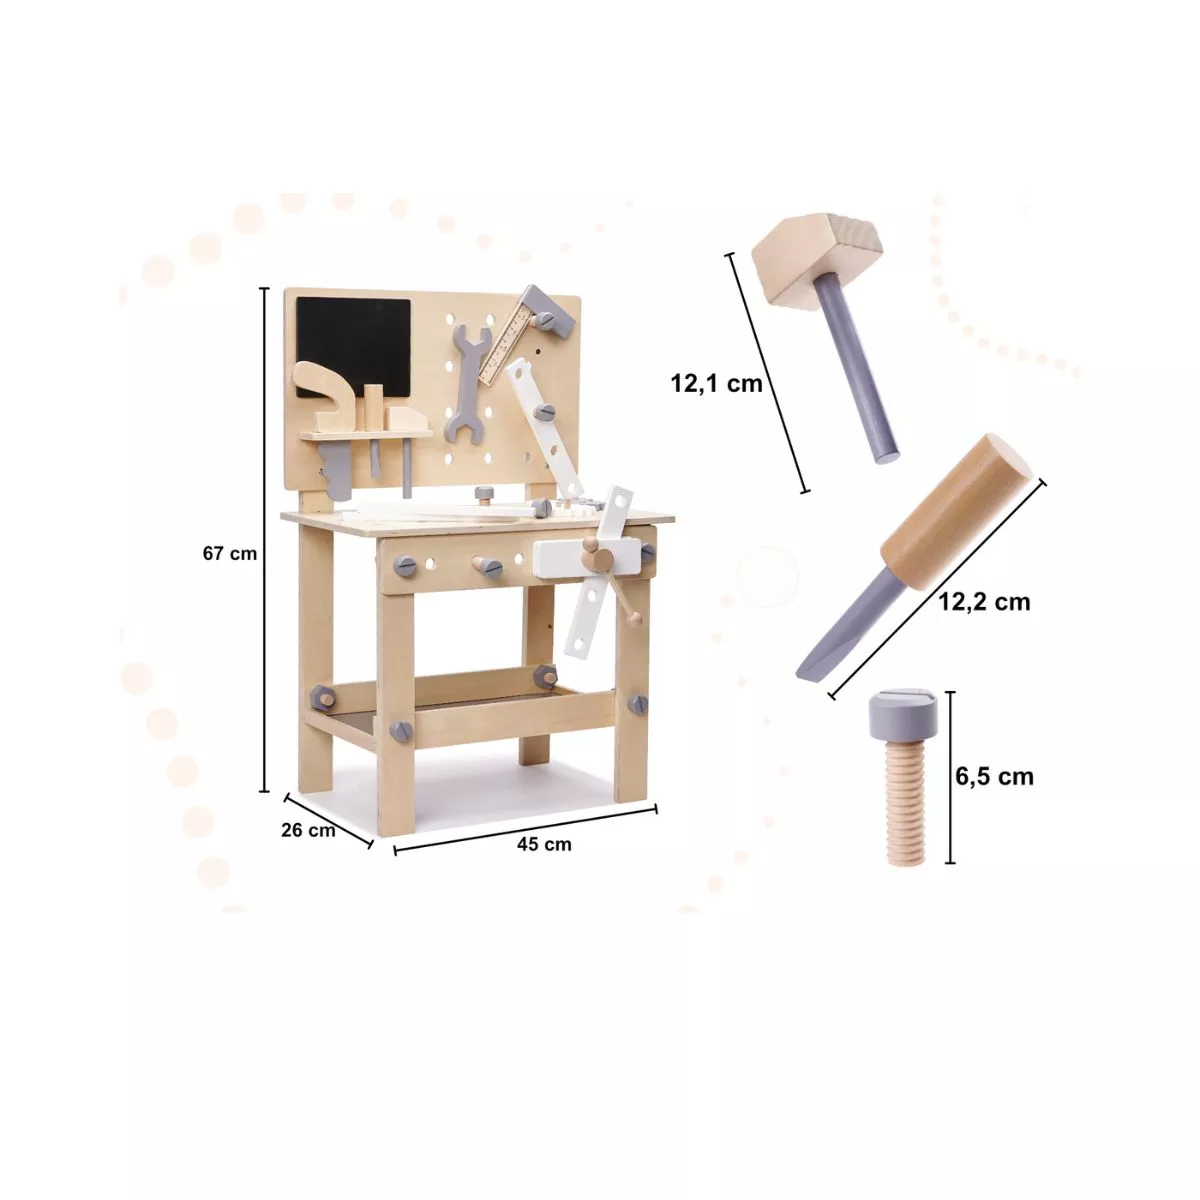 Atelier cu instrumente de lemn pentru copii, 67 cm 2